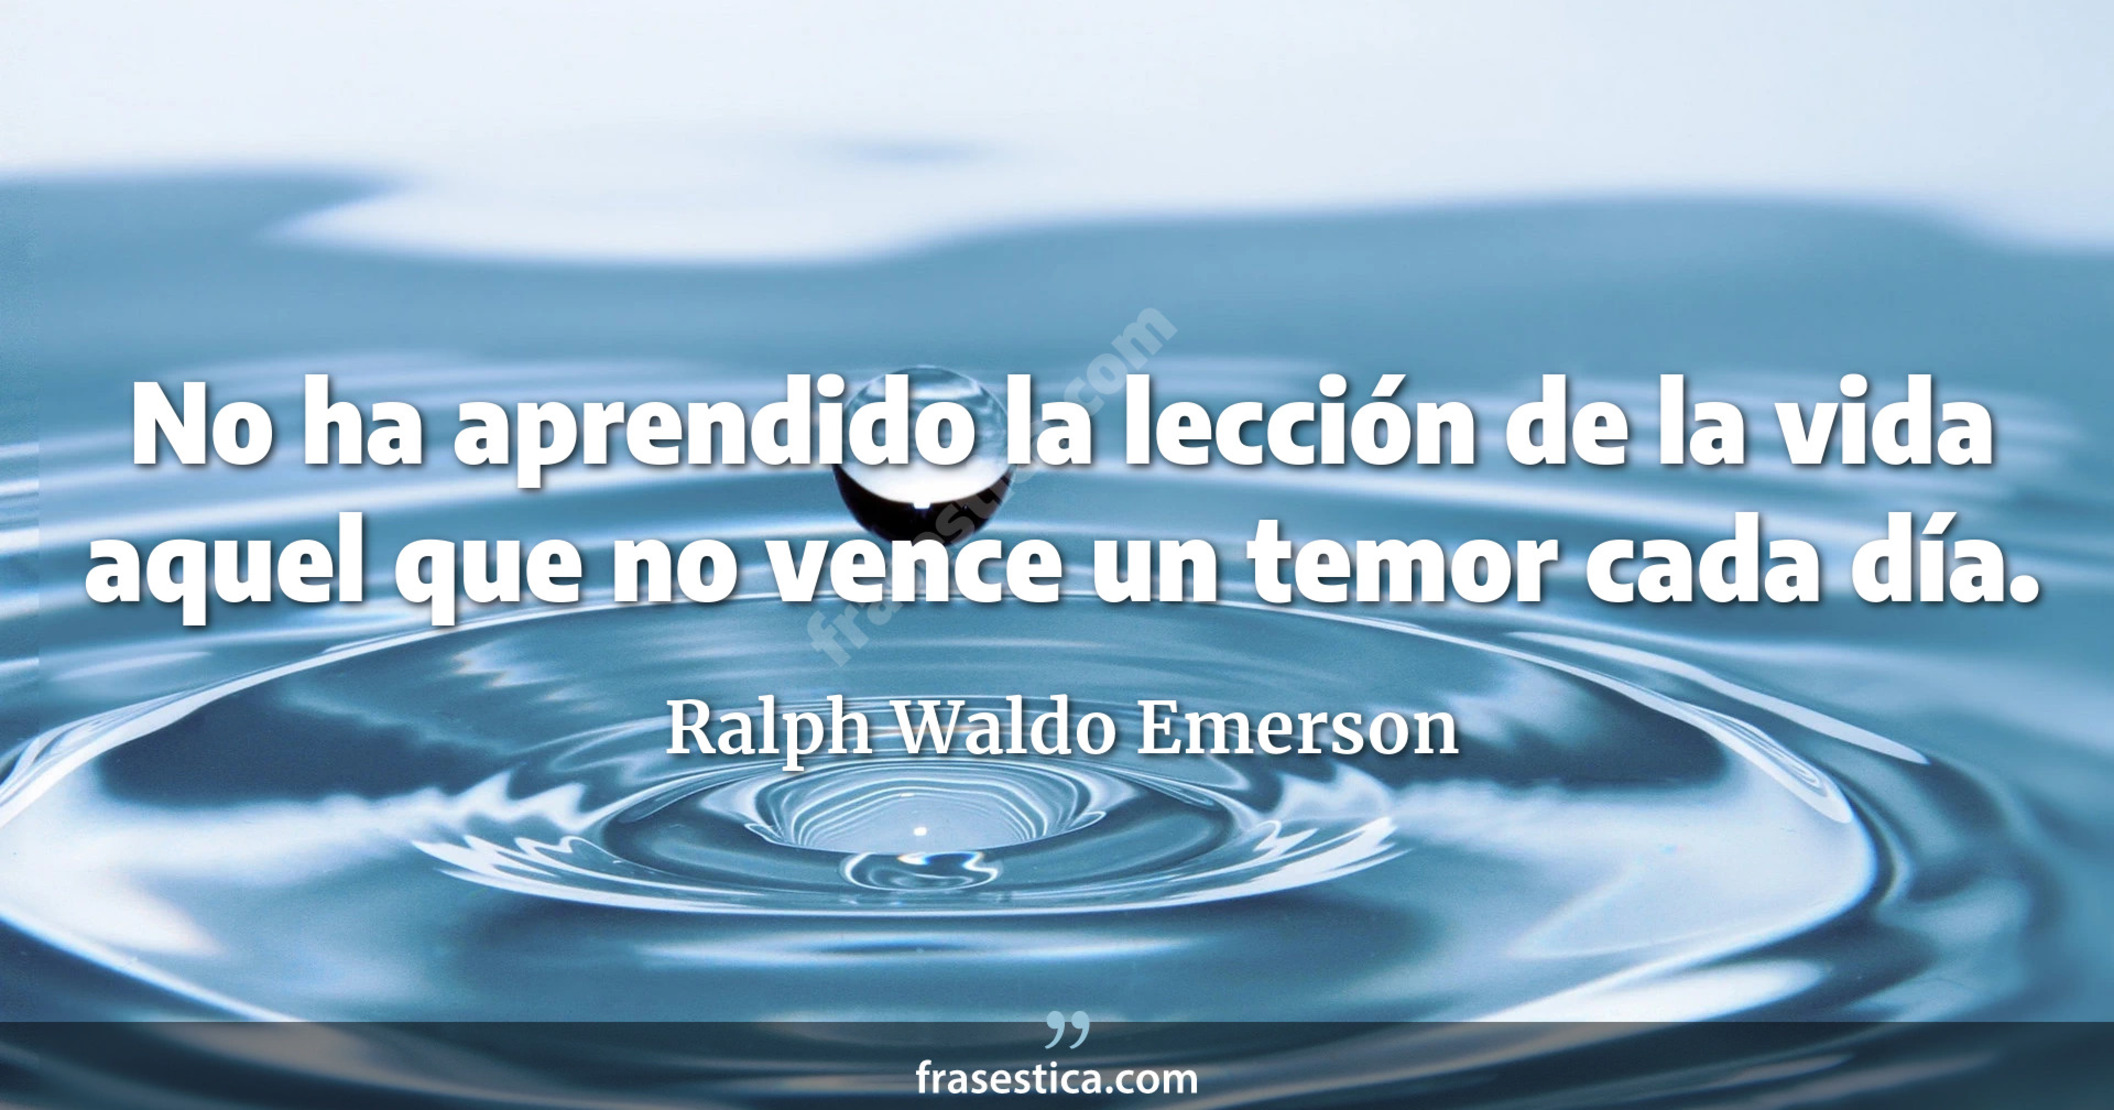 No ha aprendido la lección de la vida aquel que no vence un temor cada día. - Ralph Waldo Emerson